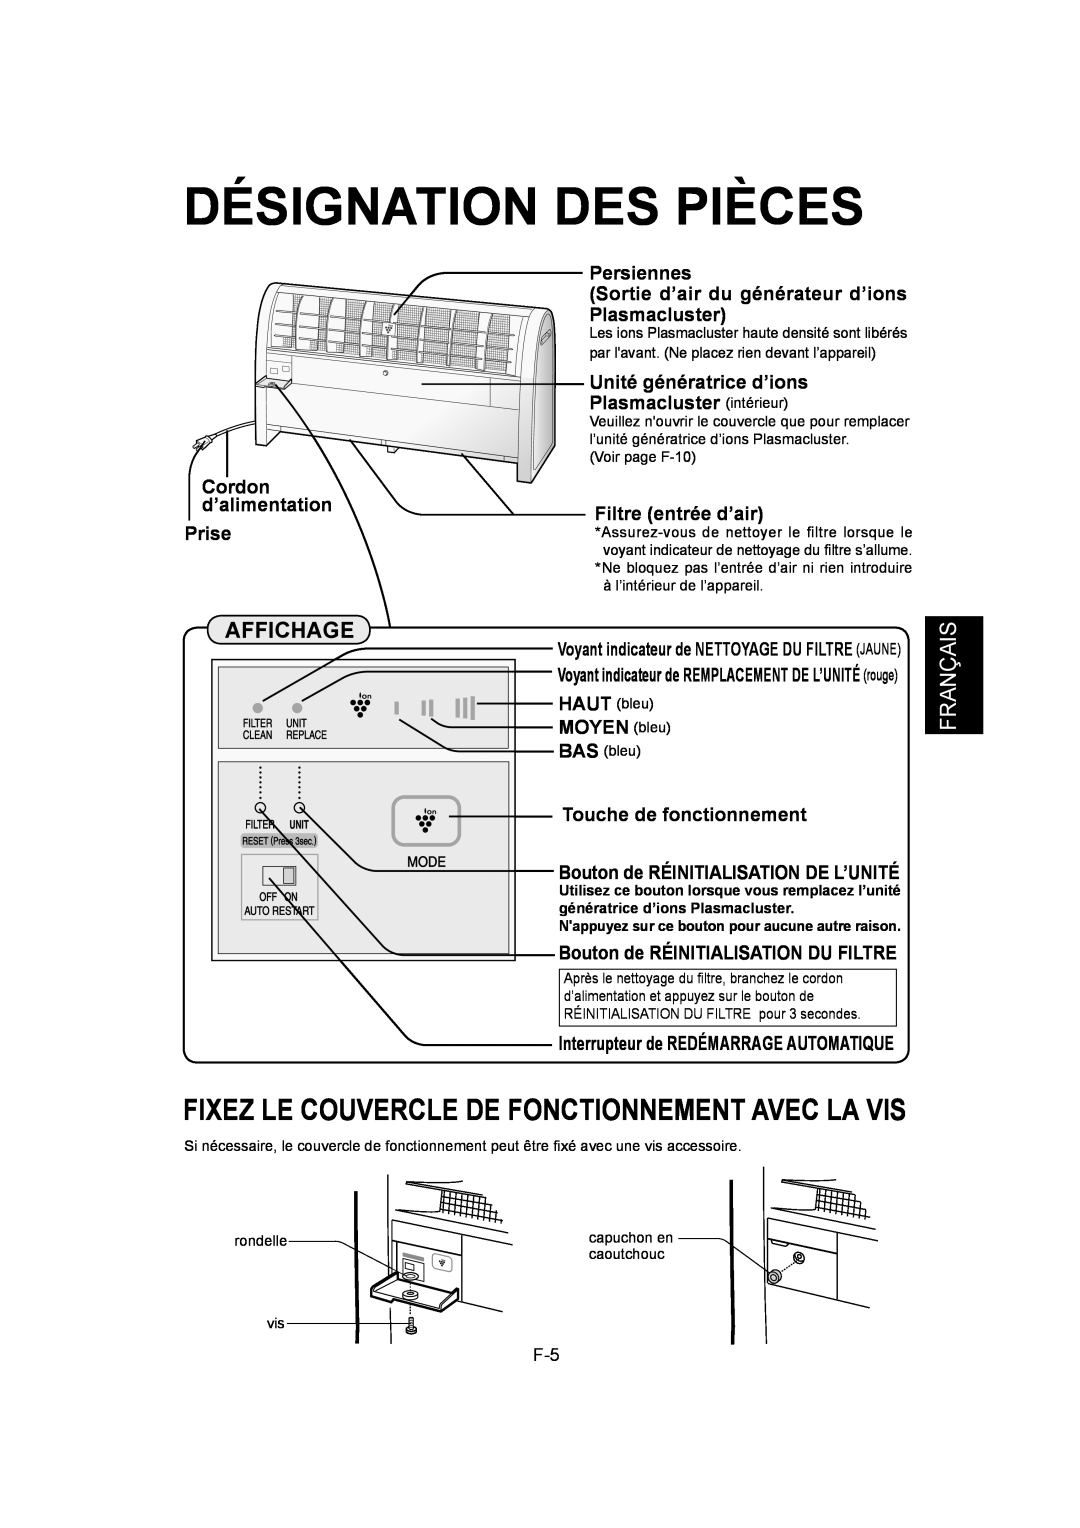 Sharp IG-A40U operation manual Désignation Des Pièces, Fixez Le Couvercle De Fonctionnement Avec La Vis, Français 